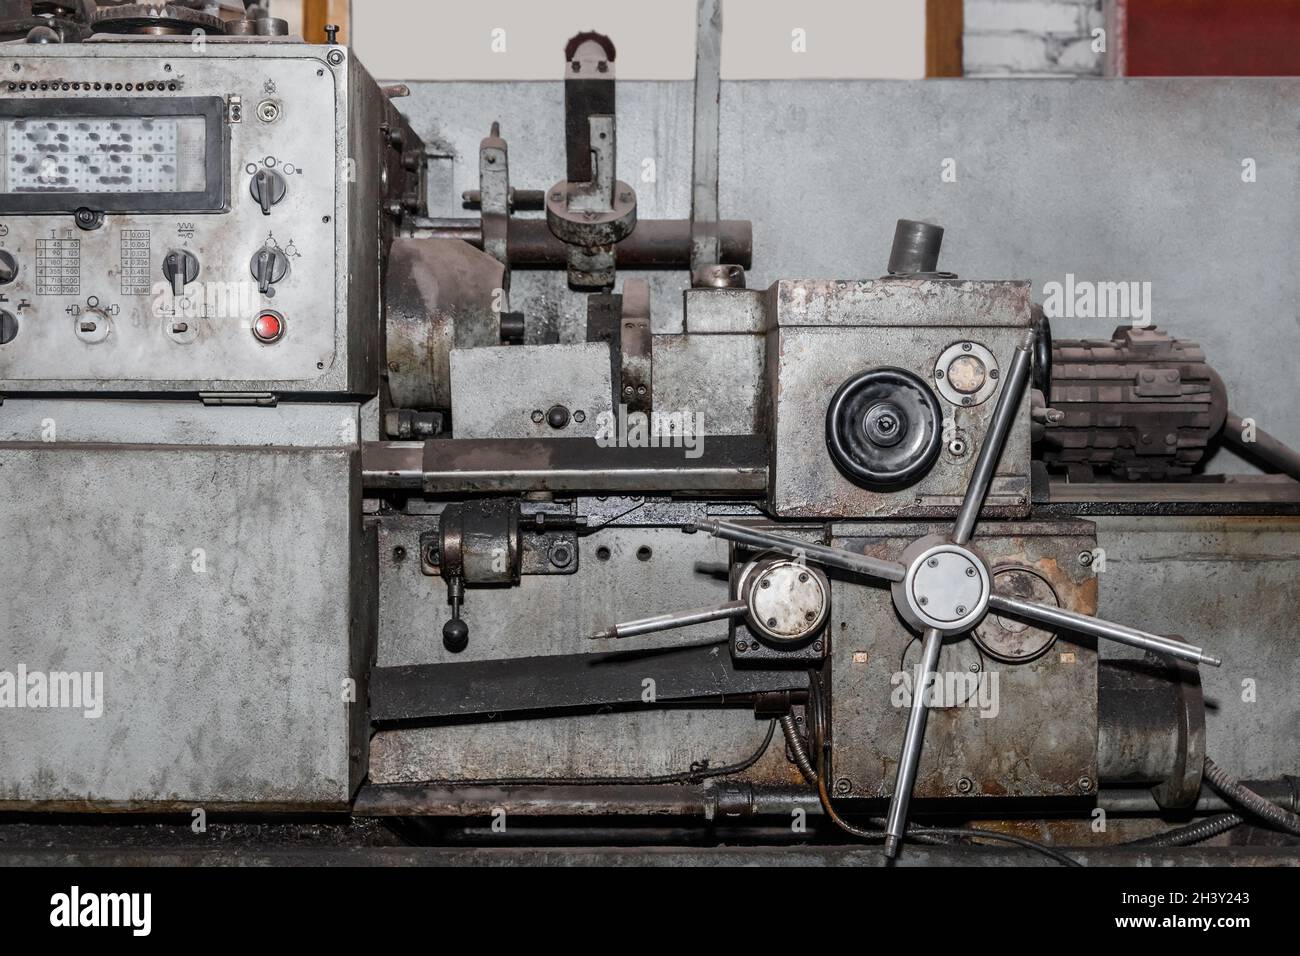 Drehmaschine Revolver alte Maschinenausrüstung für Schlosserarbeiten in einem Industriebetrieb. Stockfoto